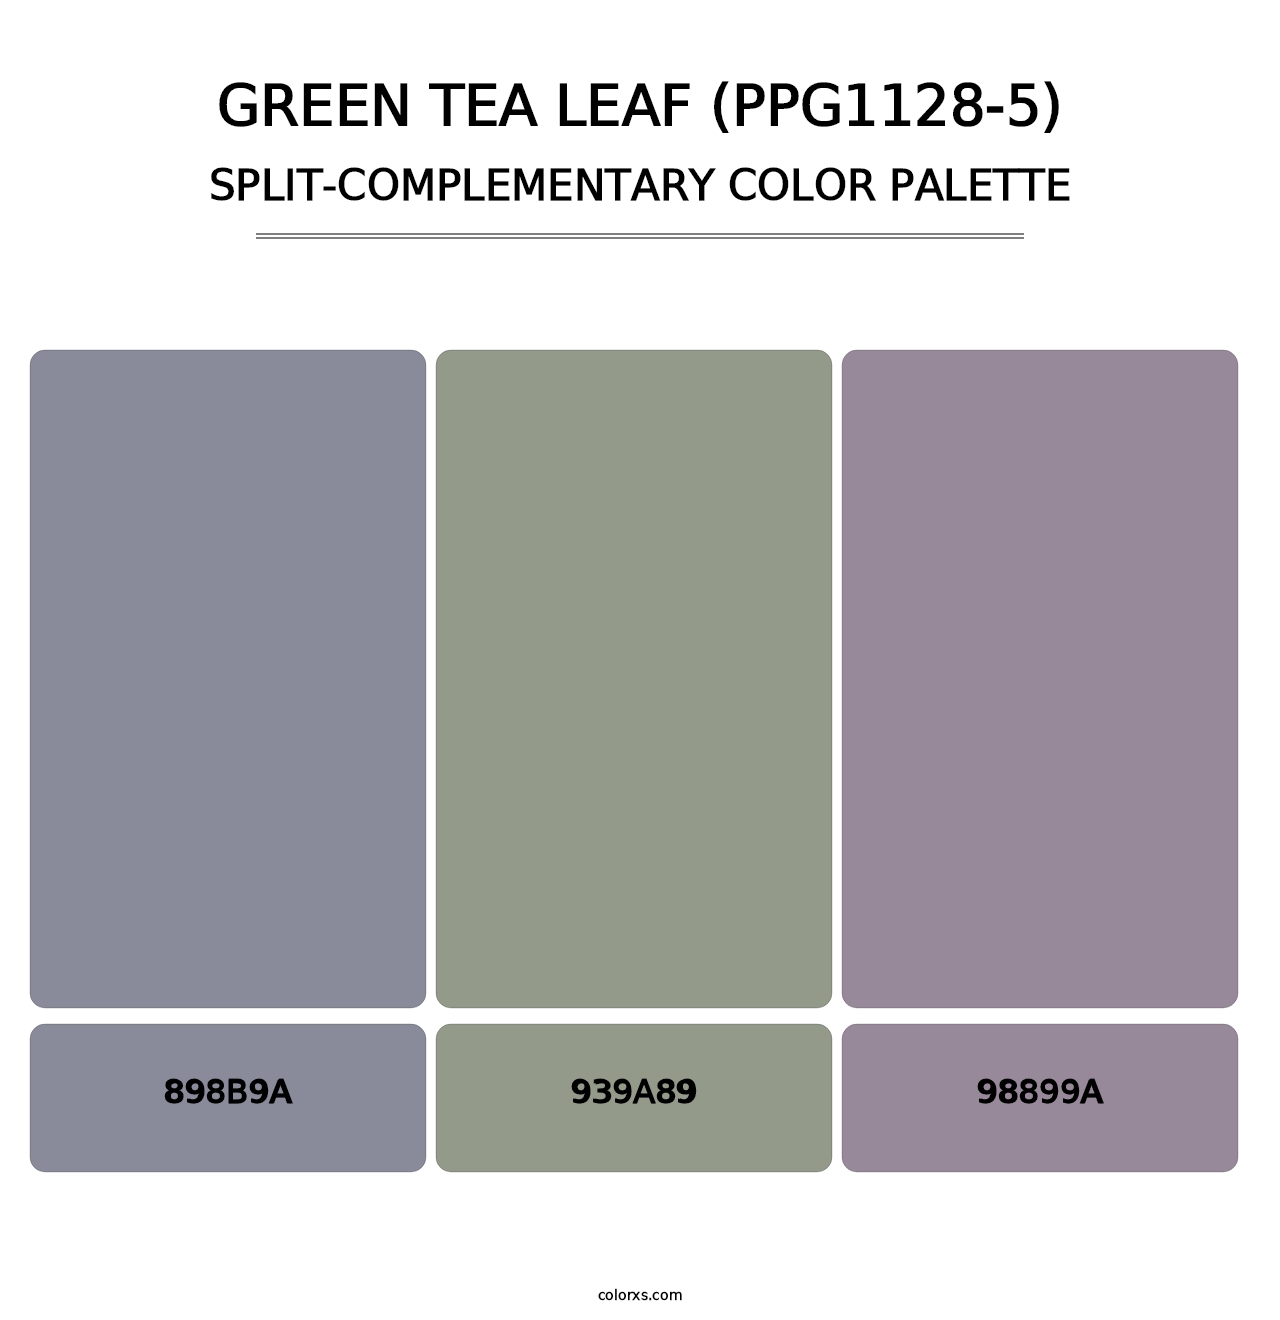 Green Tea Leaf (PPG1128-5) - Split-Complementary Color Palette